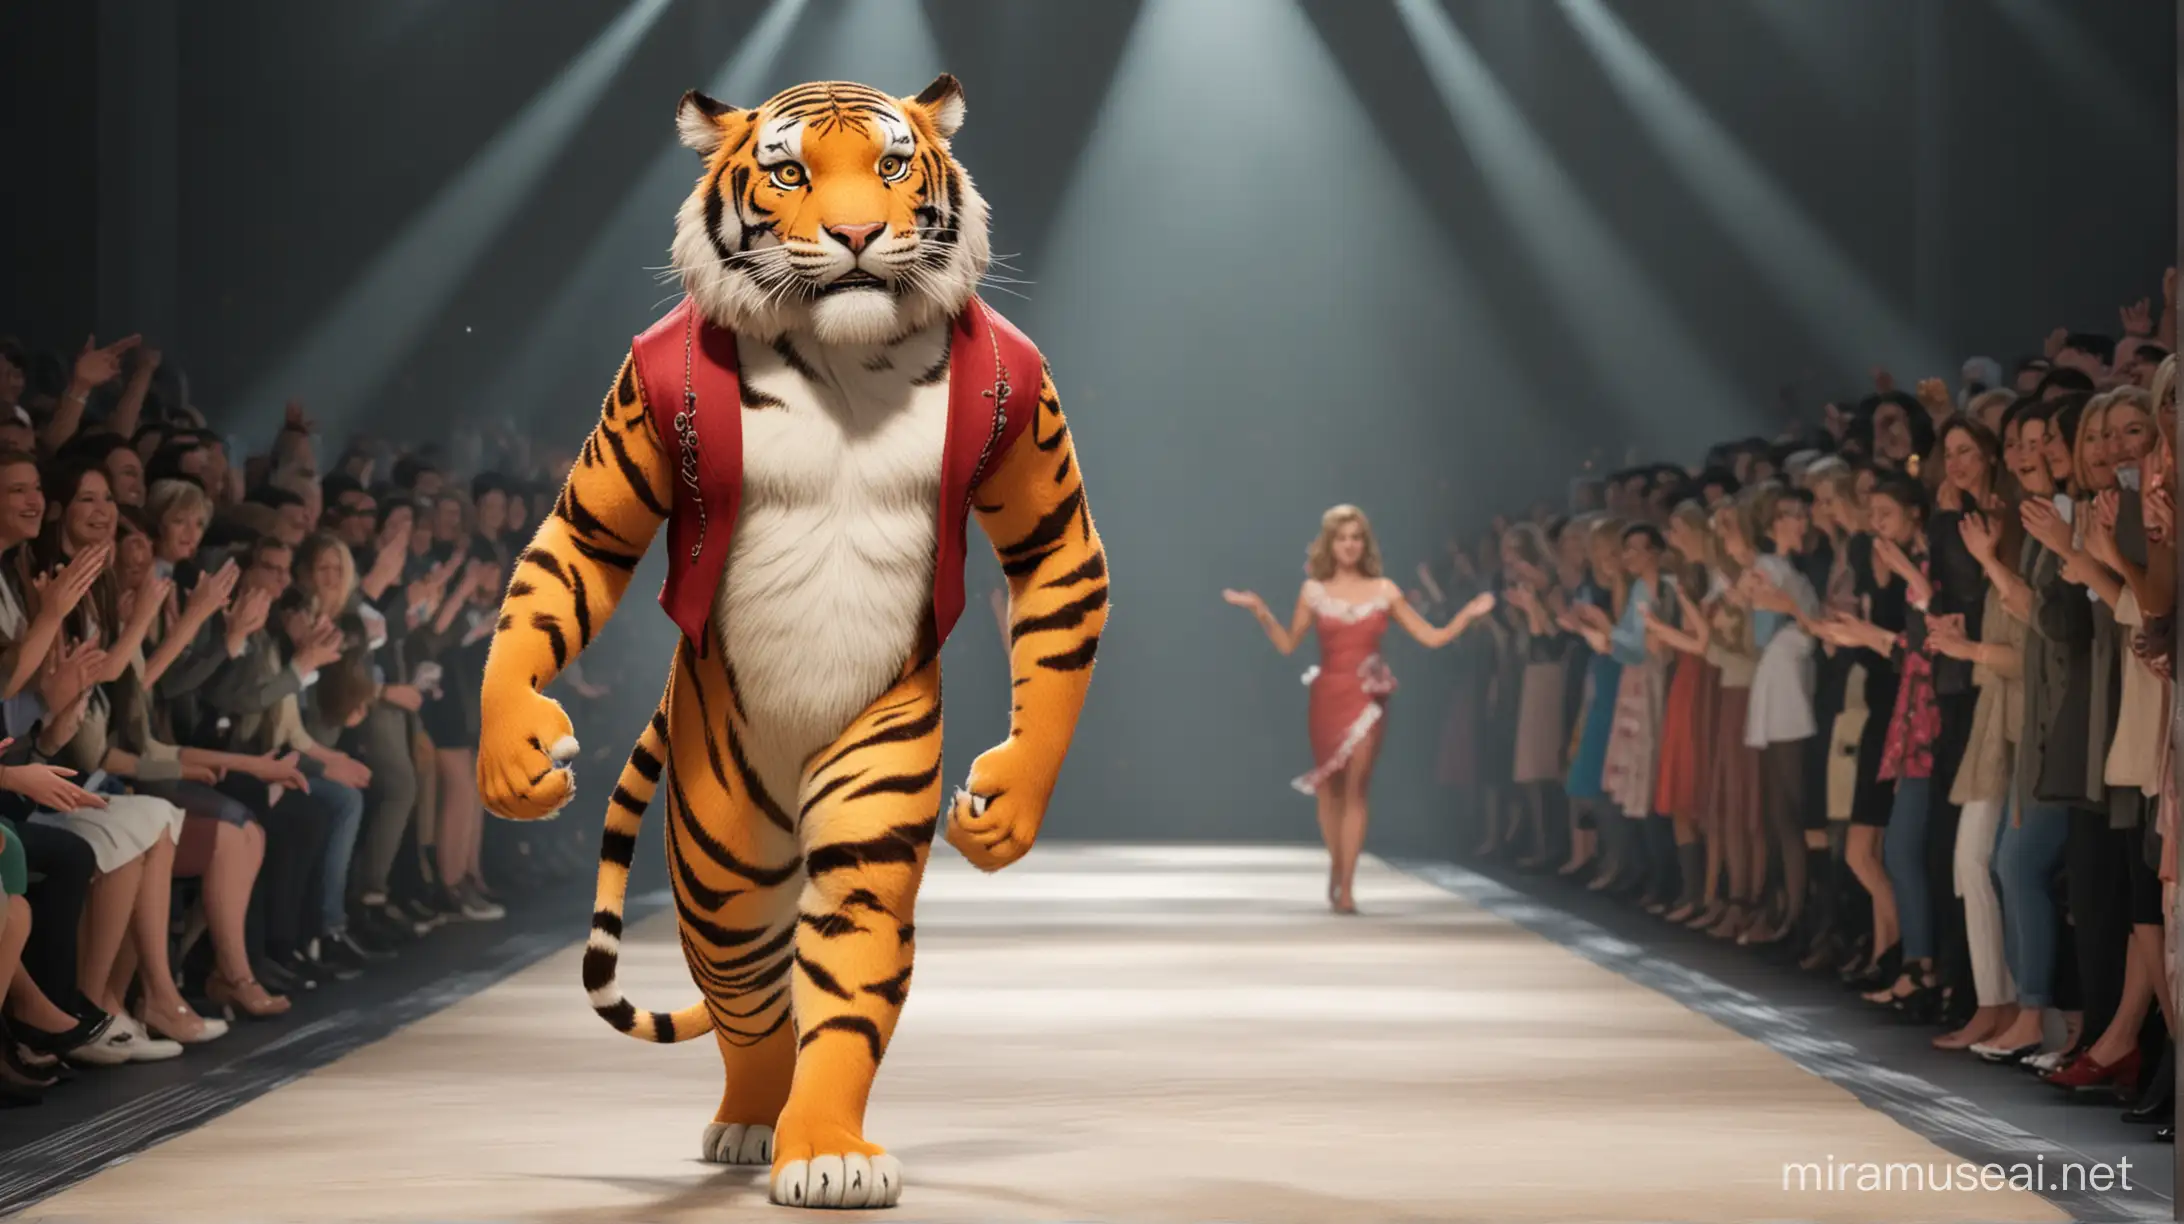 场景5：T台走步

镜头：瘦身成功后的老虎穿着时尚的服装，站在T型台上。老虎自信地走着步，眼神坚定，展示出自己新获得的自信和魅力。观众们爆发出热烈的掌声。请根据迪士尼动画制片